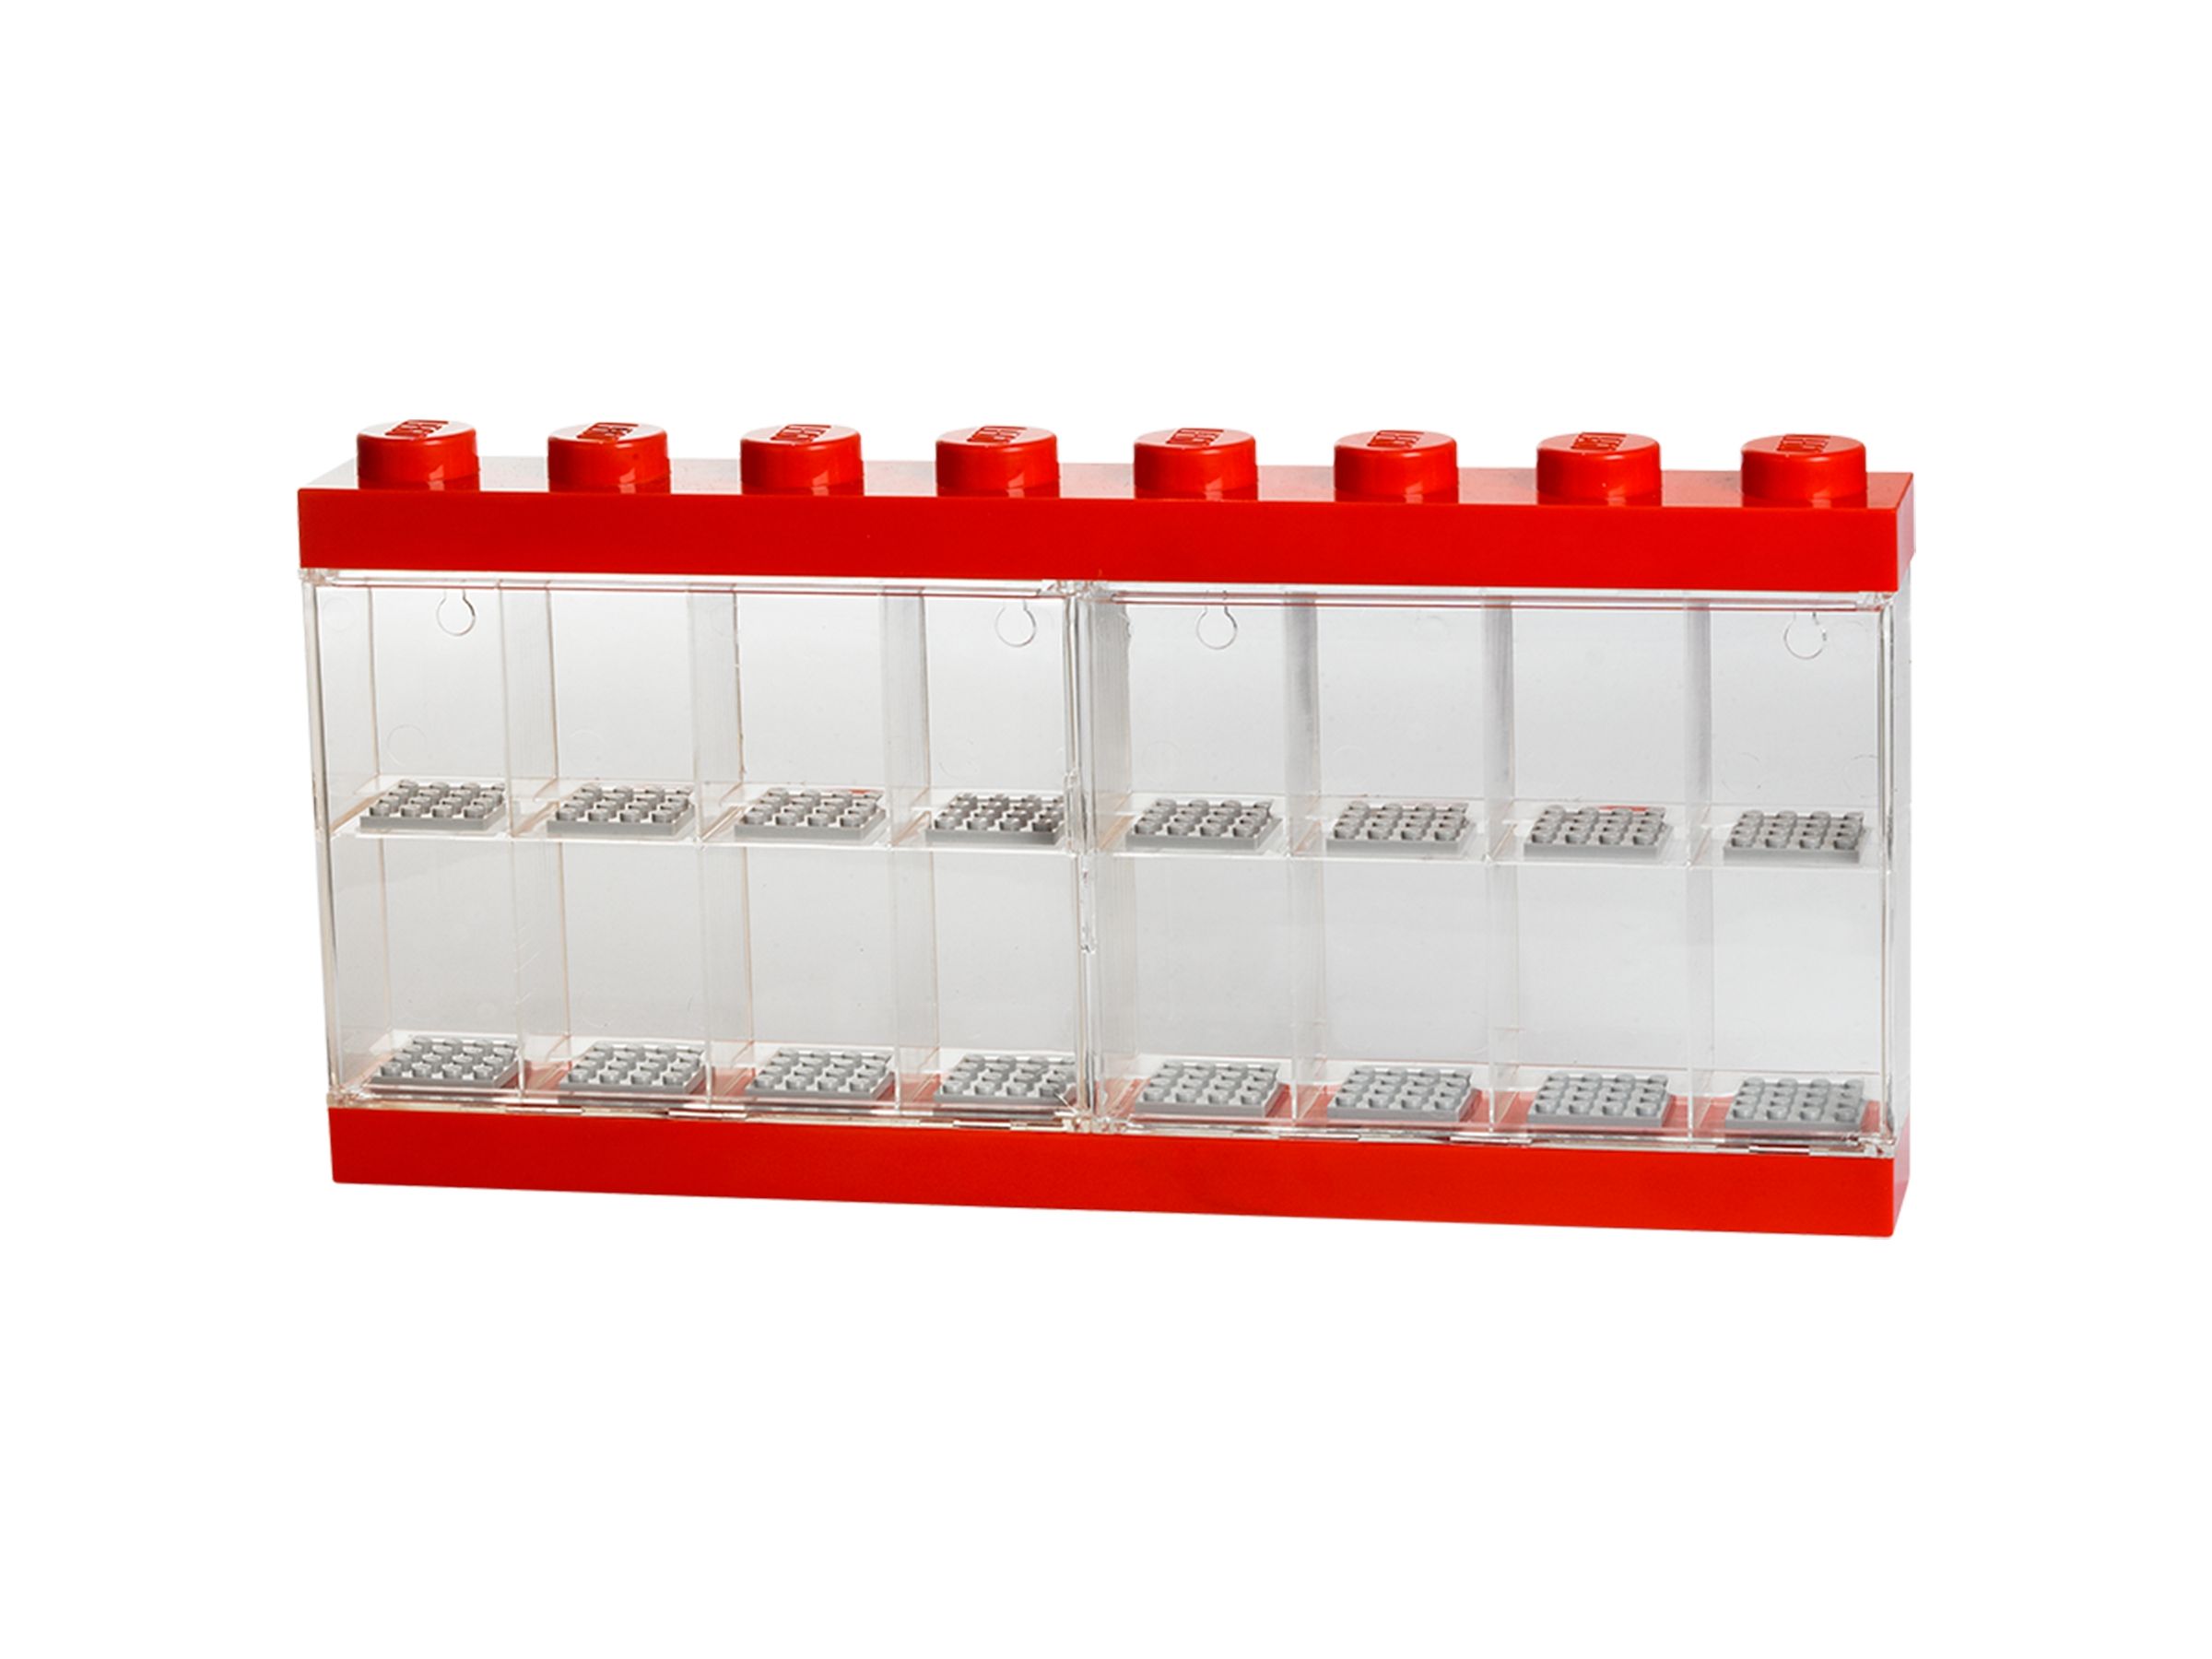 LEGO Gear 5006154 Schaukasten für 16 Minifiguren in Rot LEGO_5004892.jpg